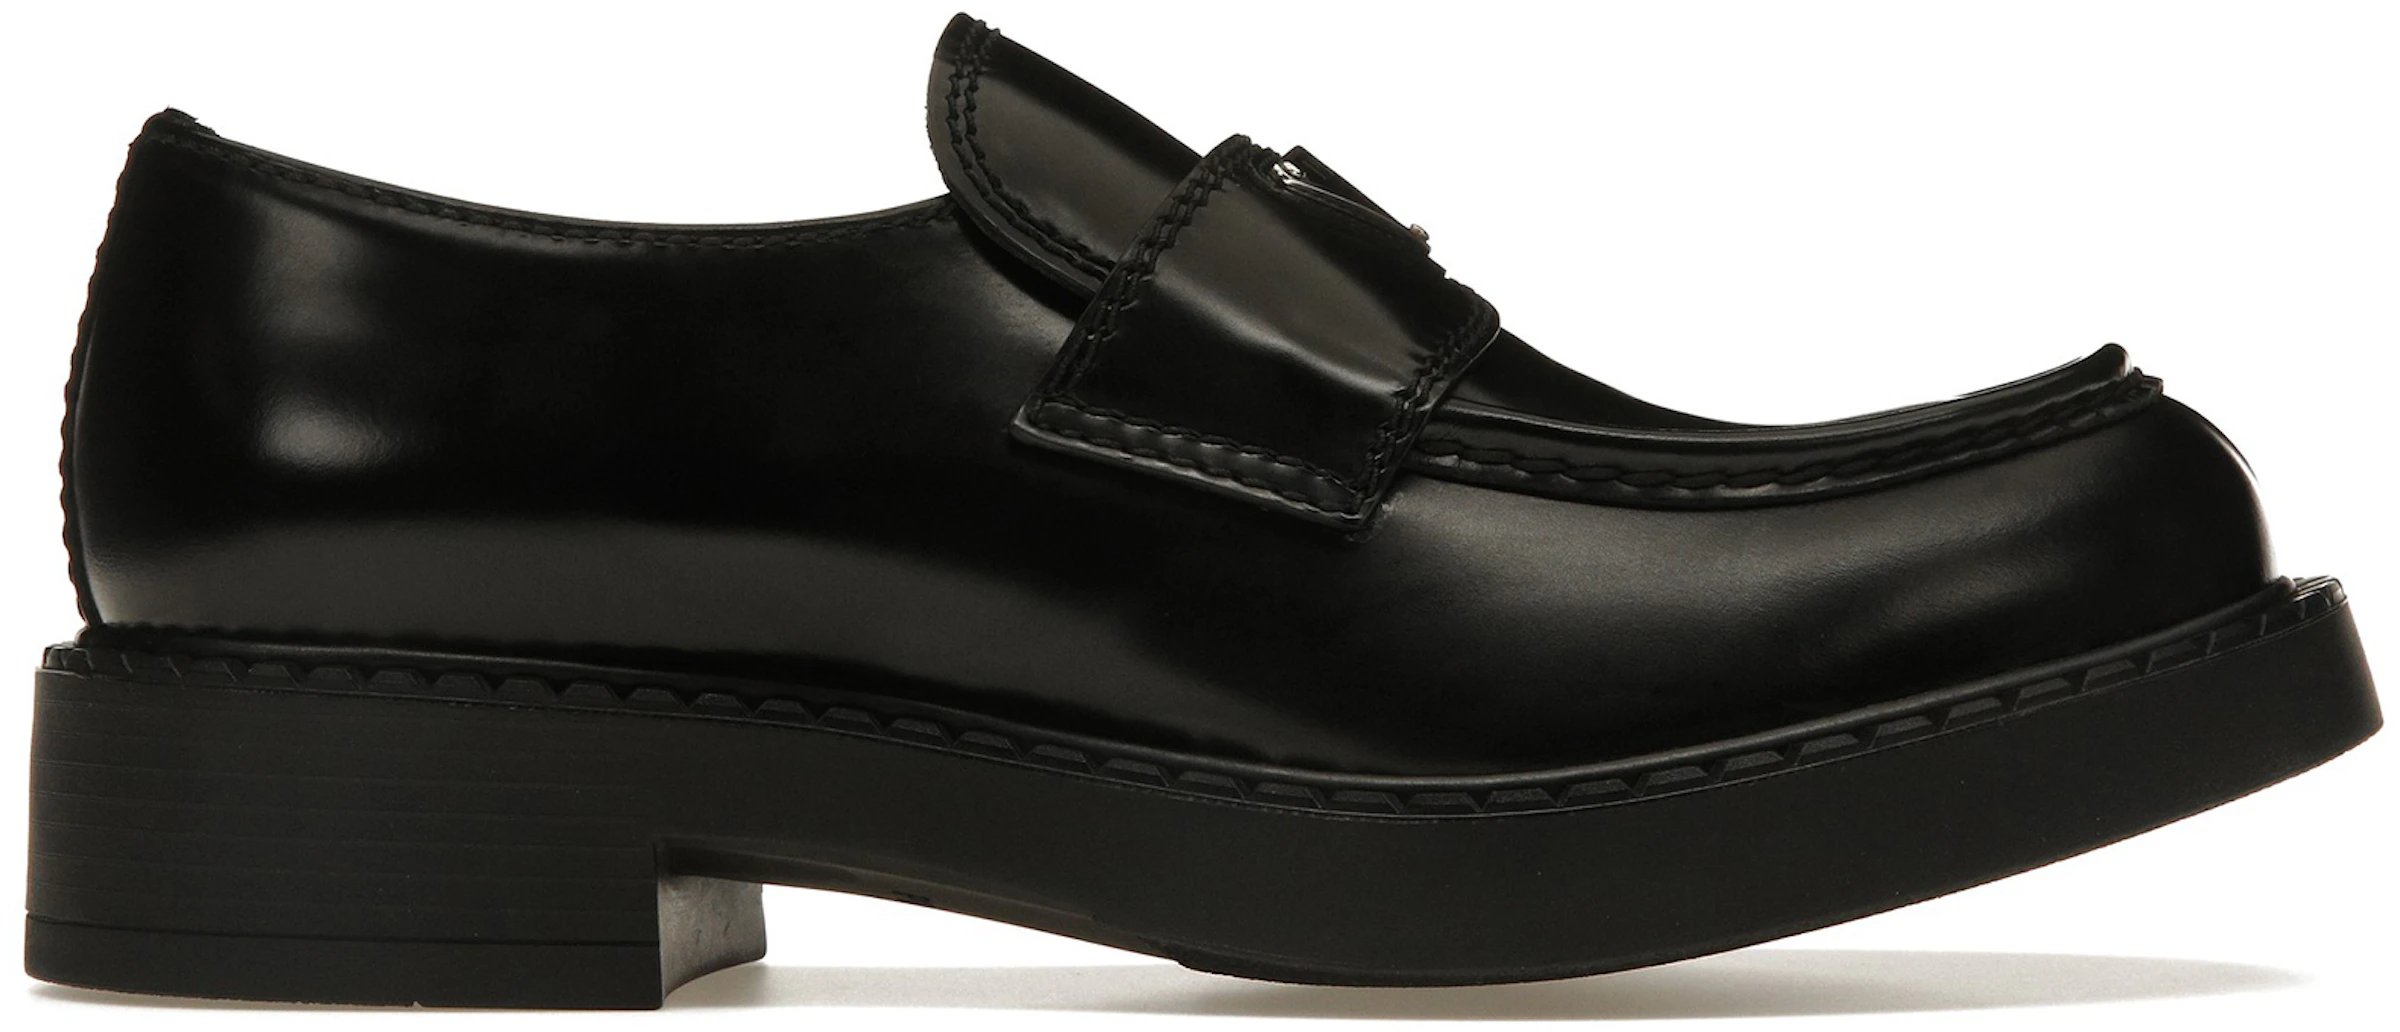 Loafer Black Leather - - TW